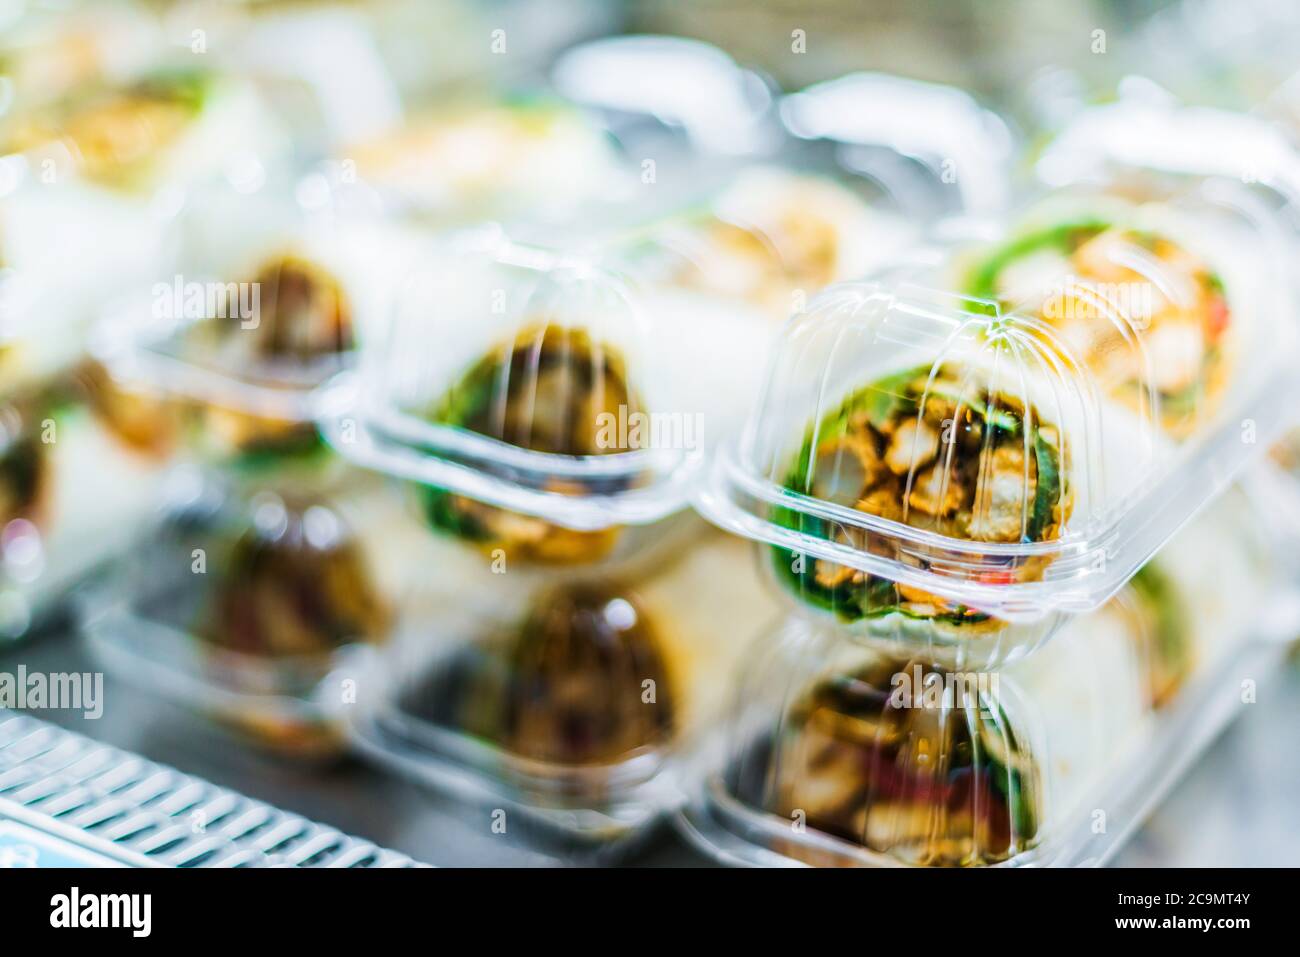 Les sandwichs préemballés sont présentés dans un réfrigérateur commercial Banque D'Images